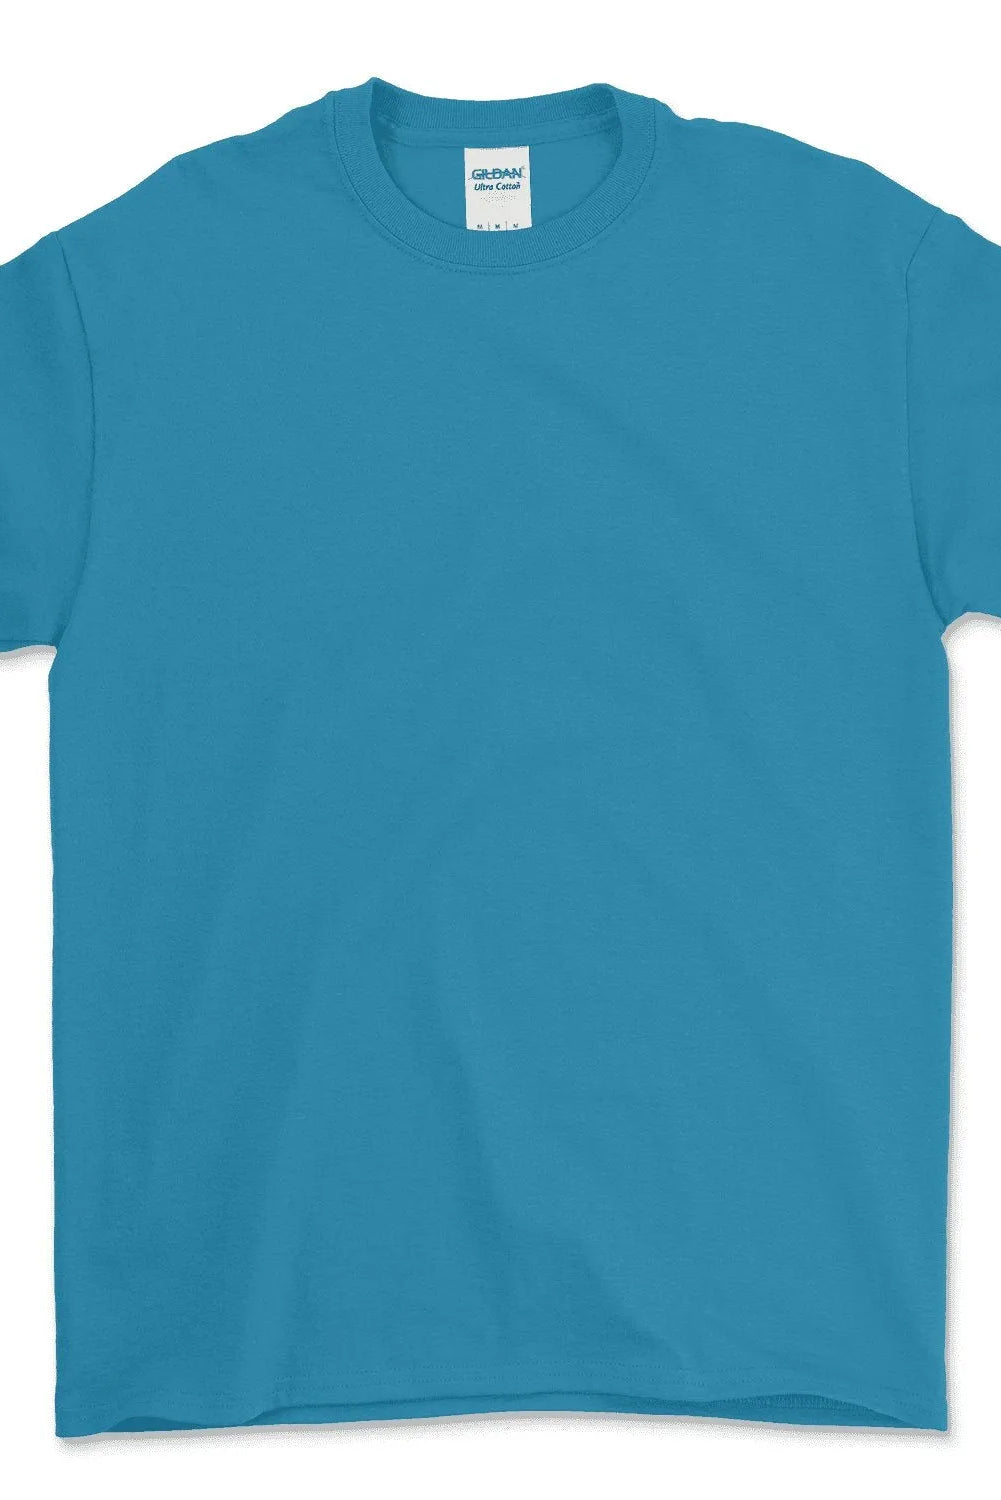 Ultra Cotton® Youth T-Shirt - 2000B - Print Me Shirts